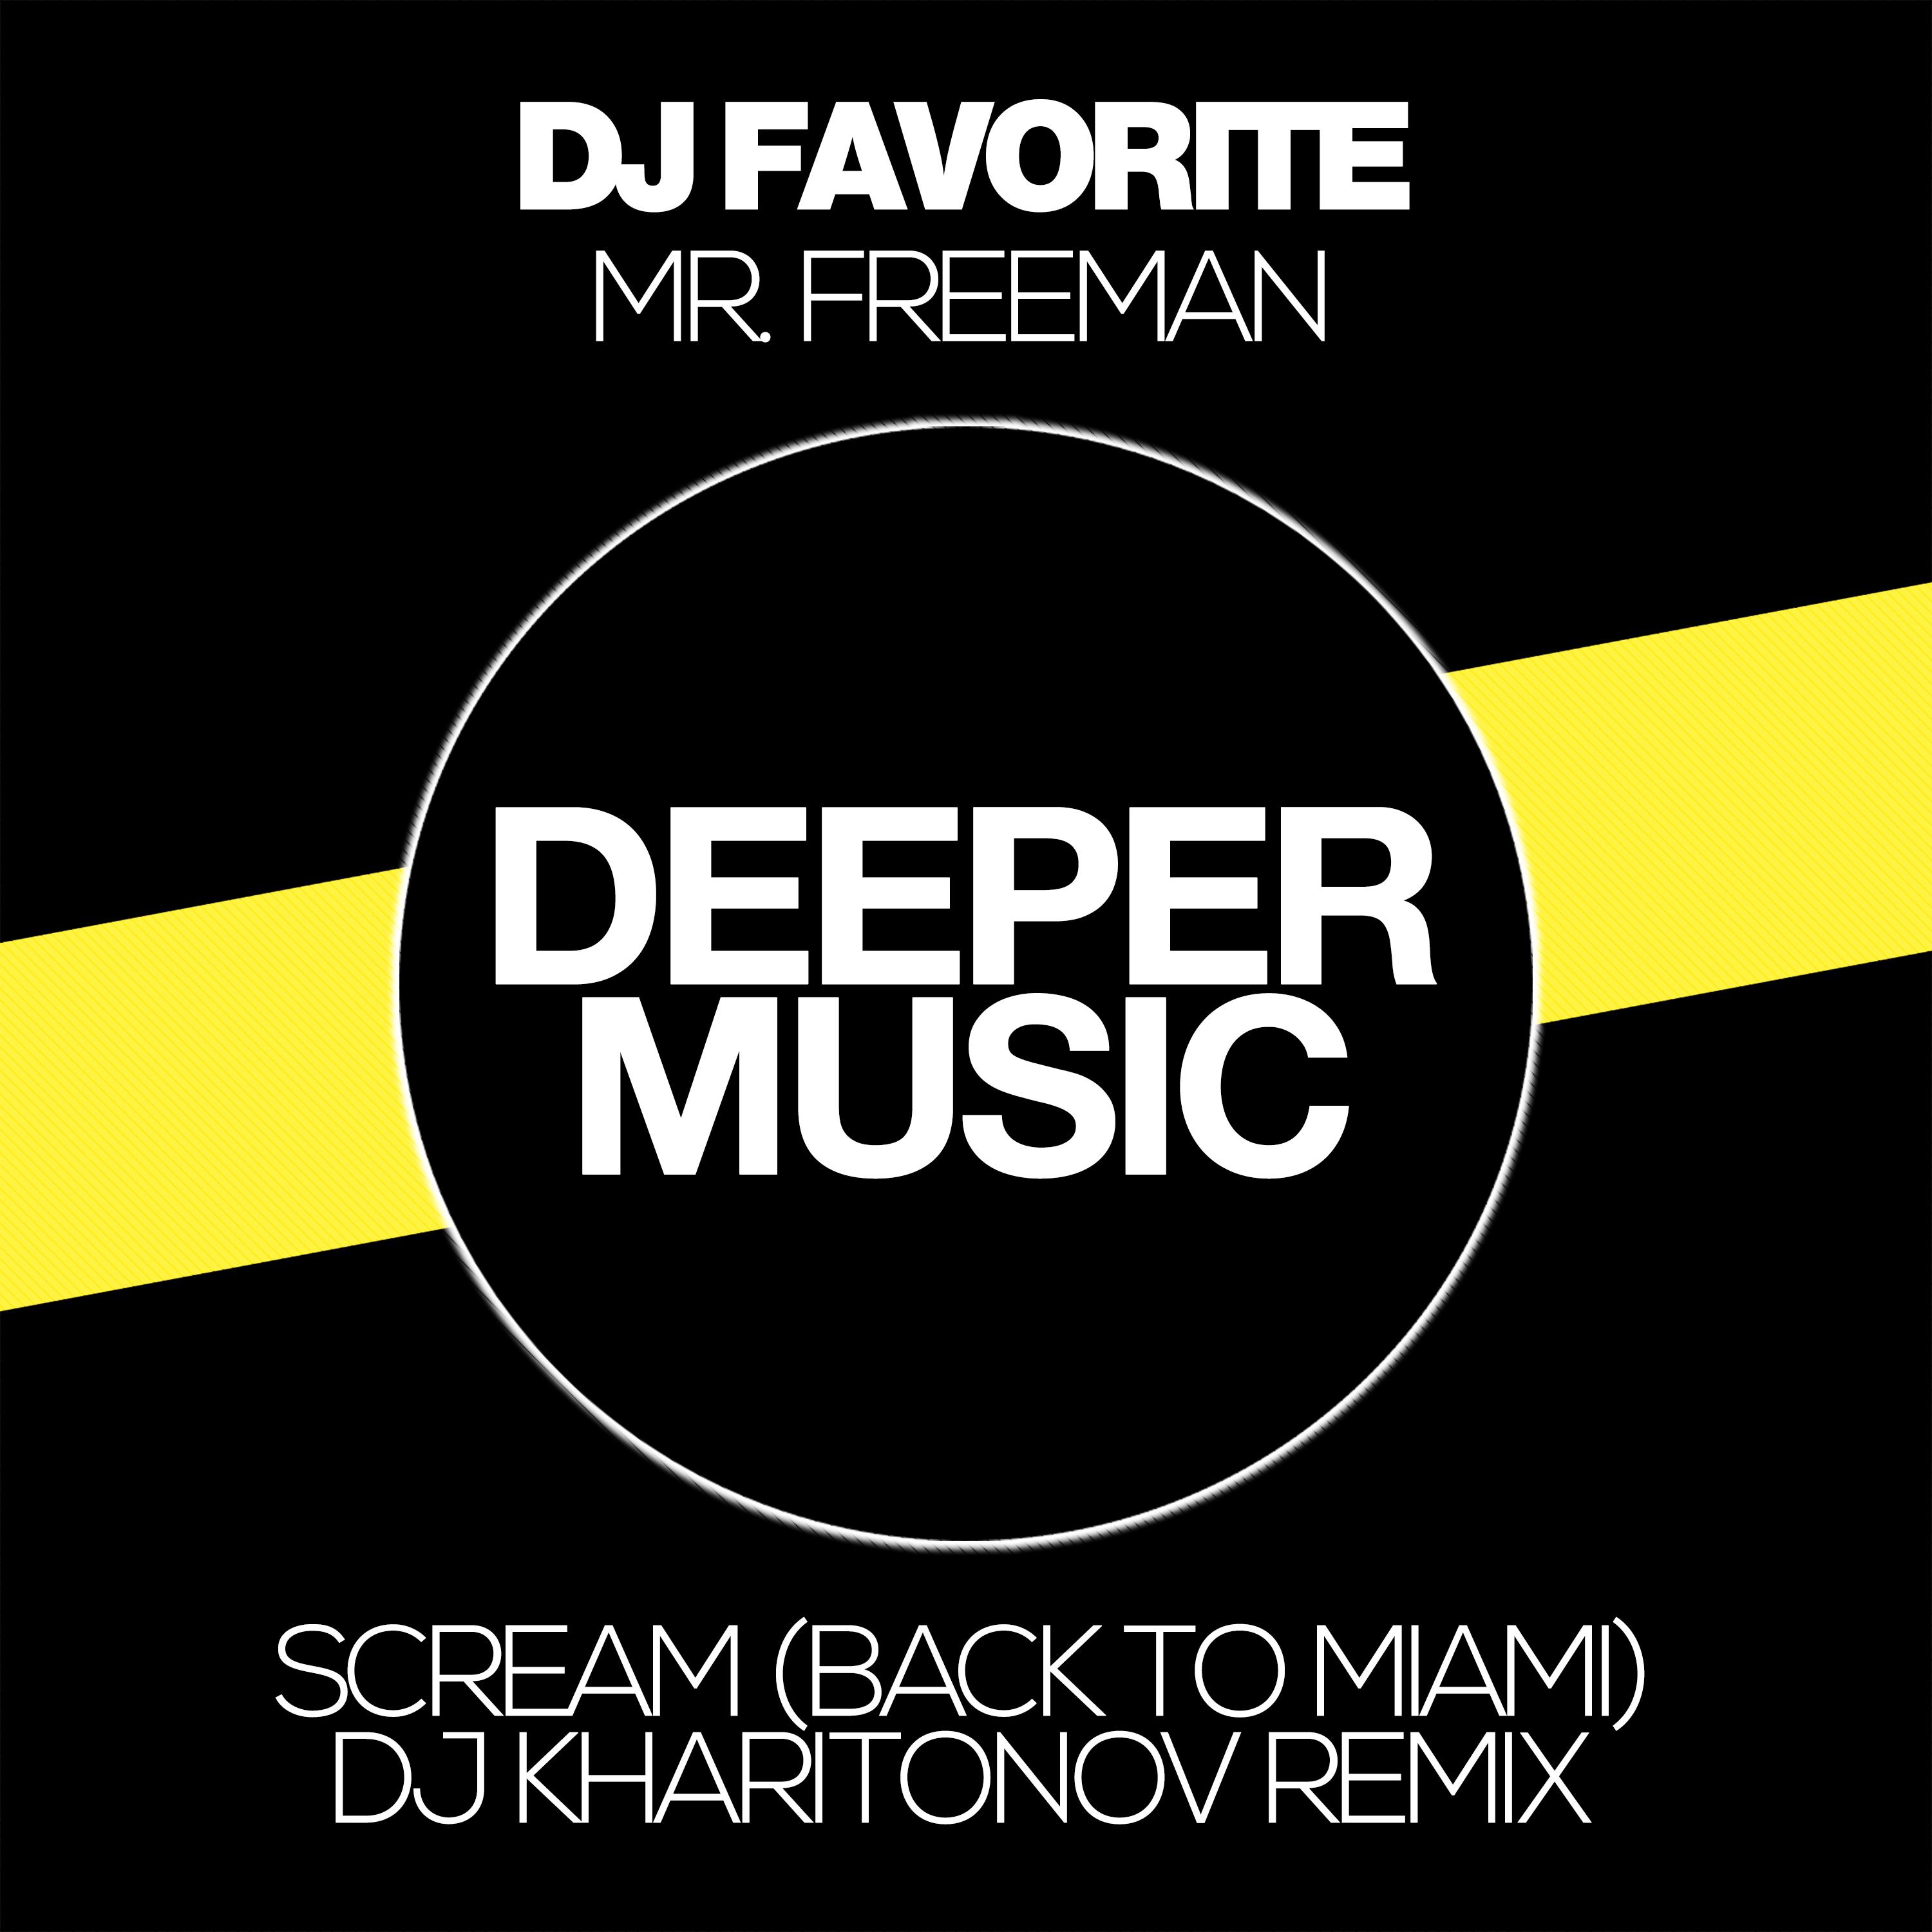 Scream (Back to Miami) (DJ Kharitonov Remix)